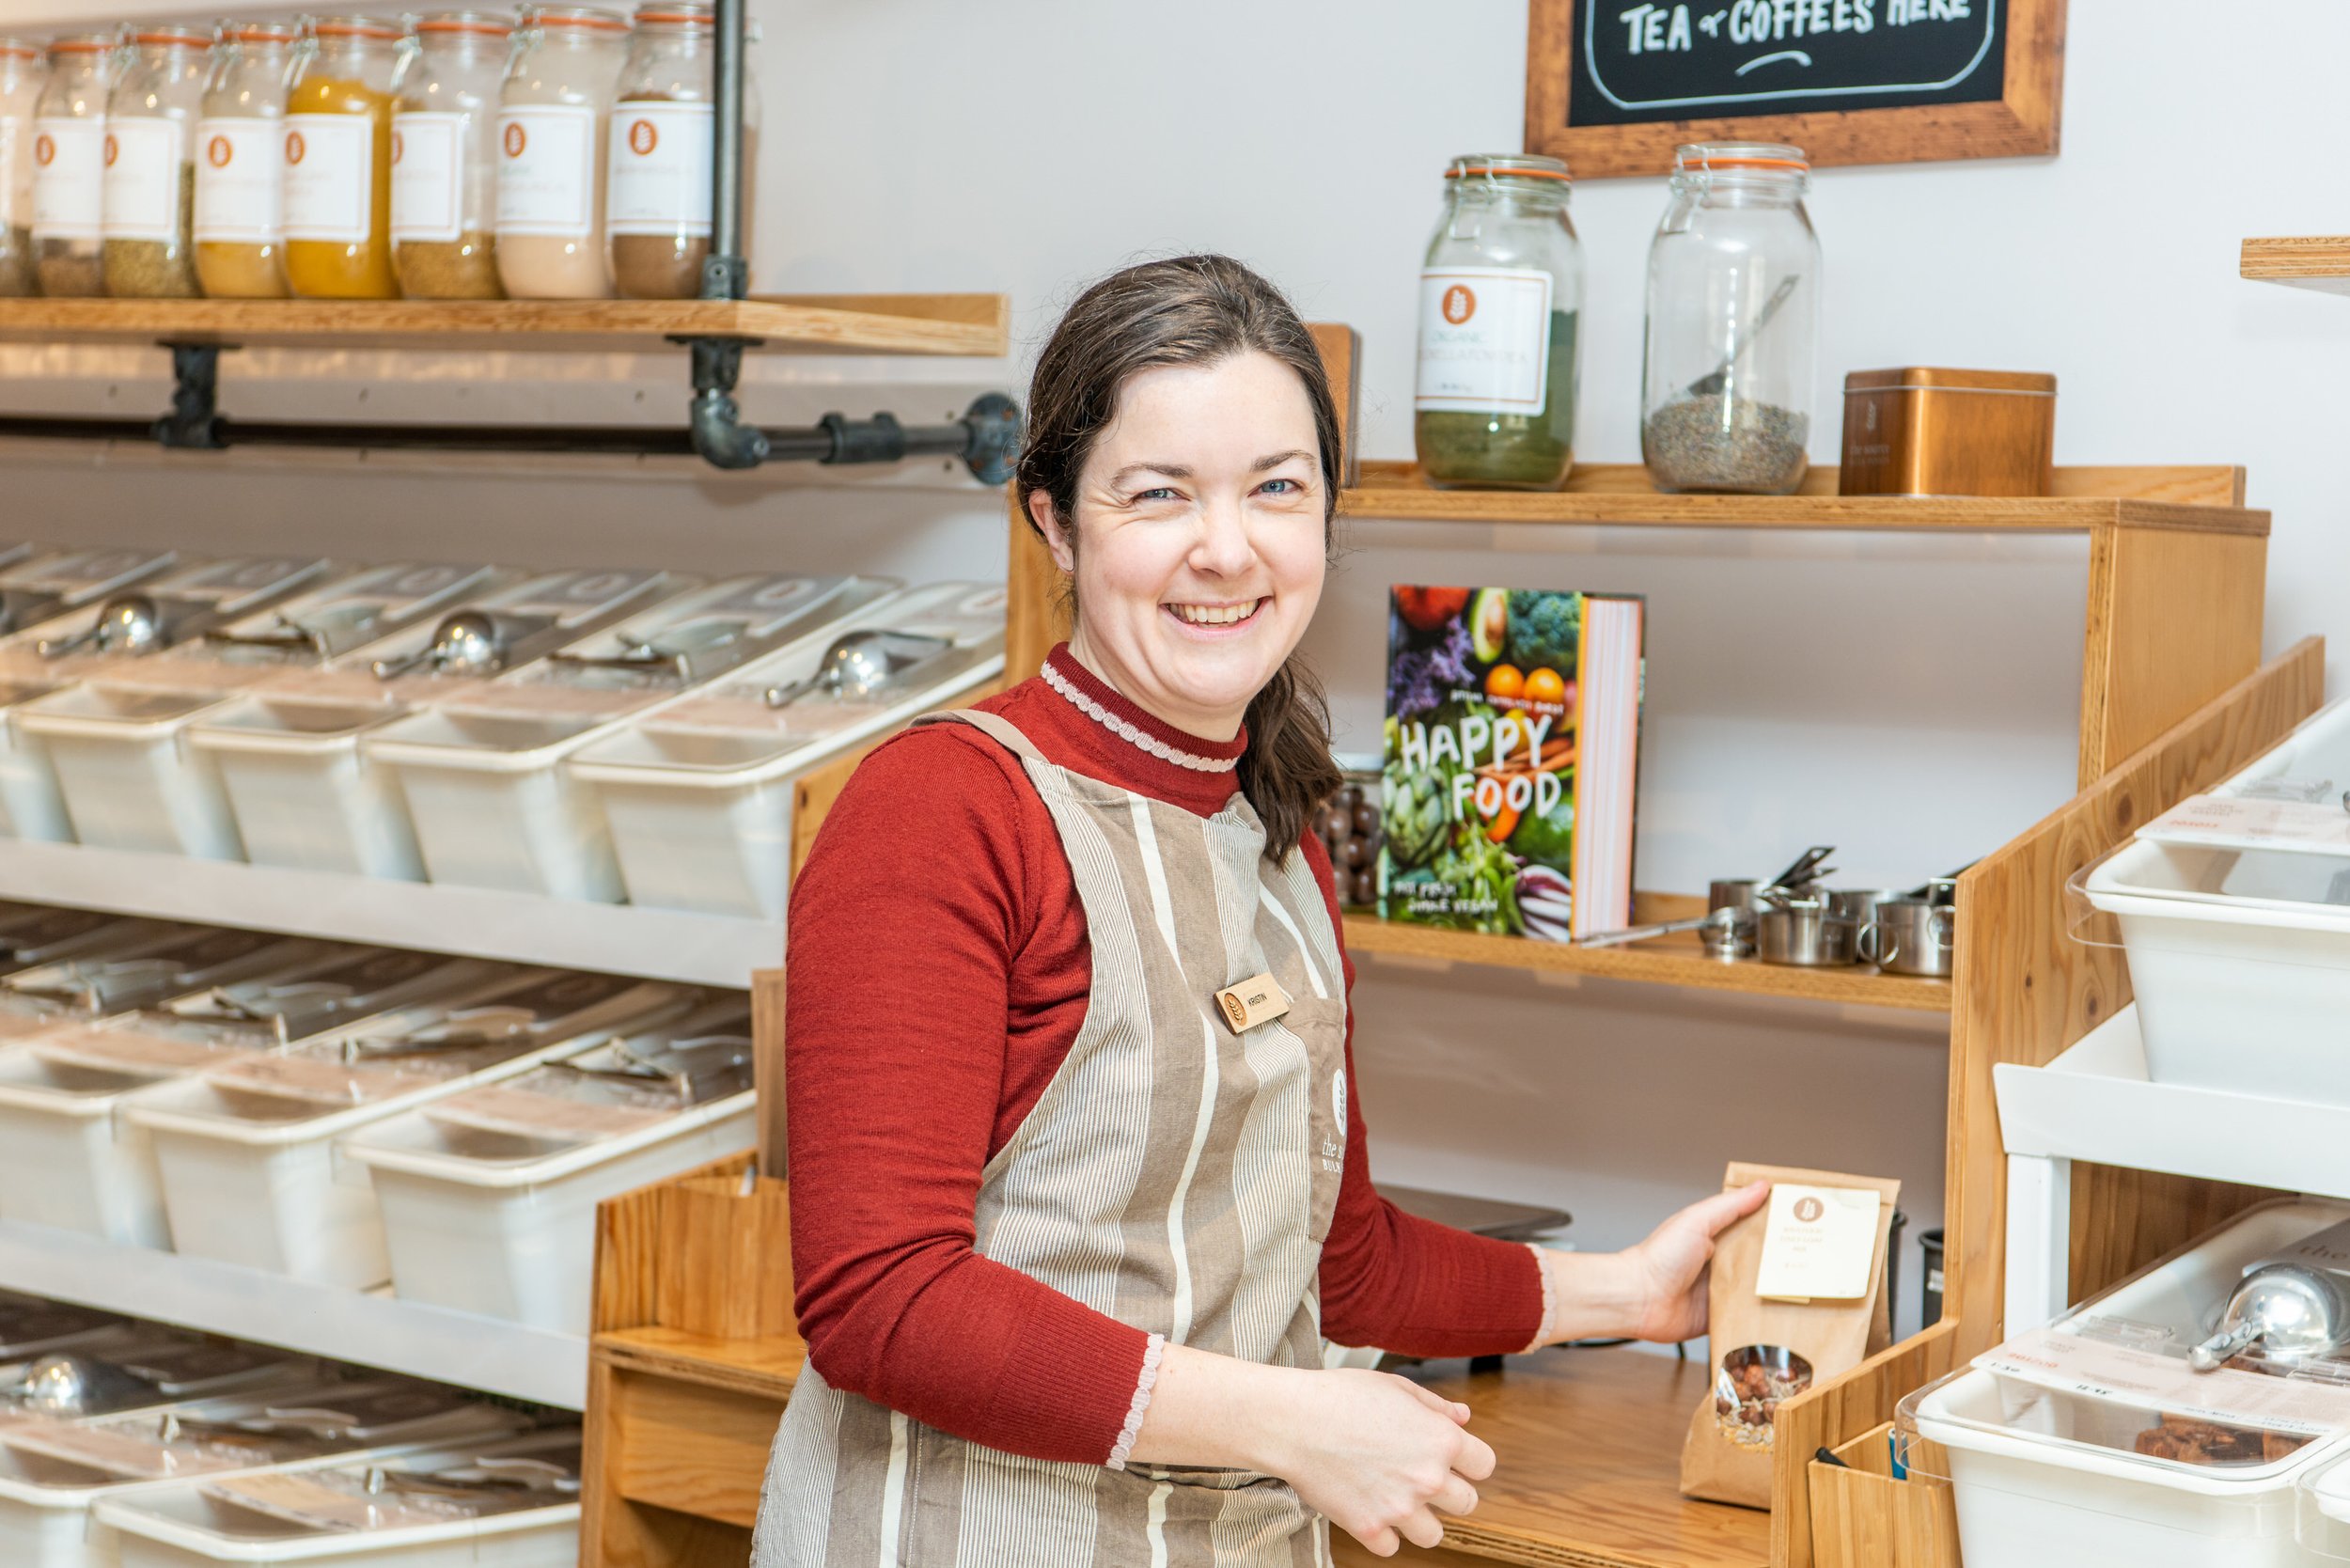  Food shop worker smile while she restocks shelves. 